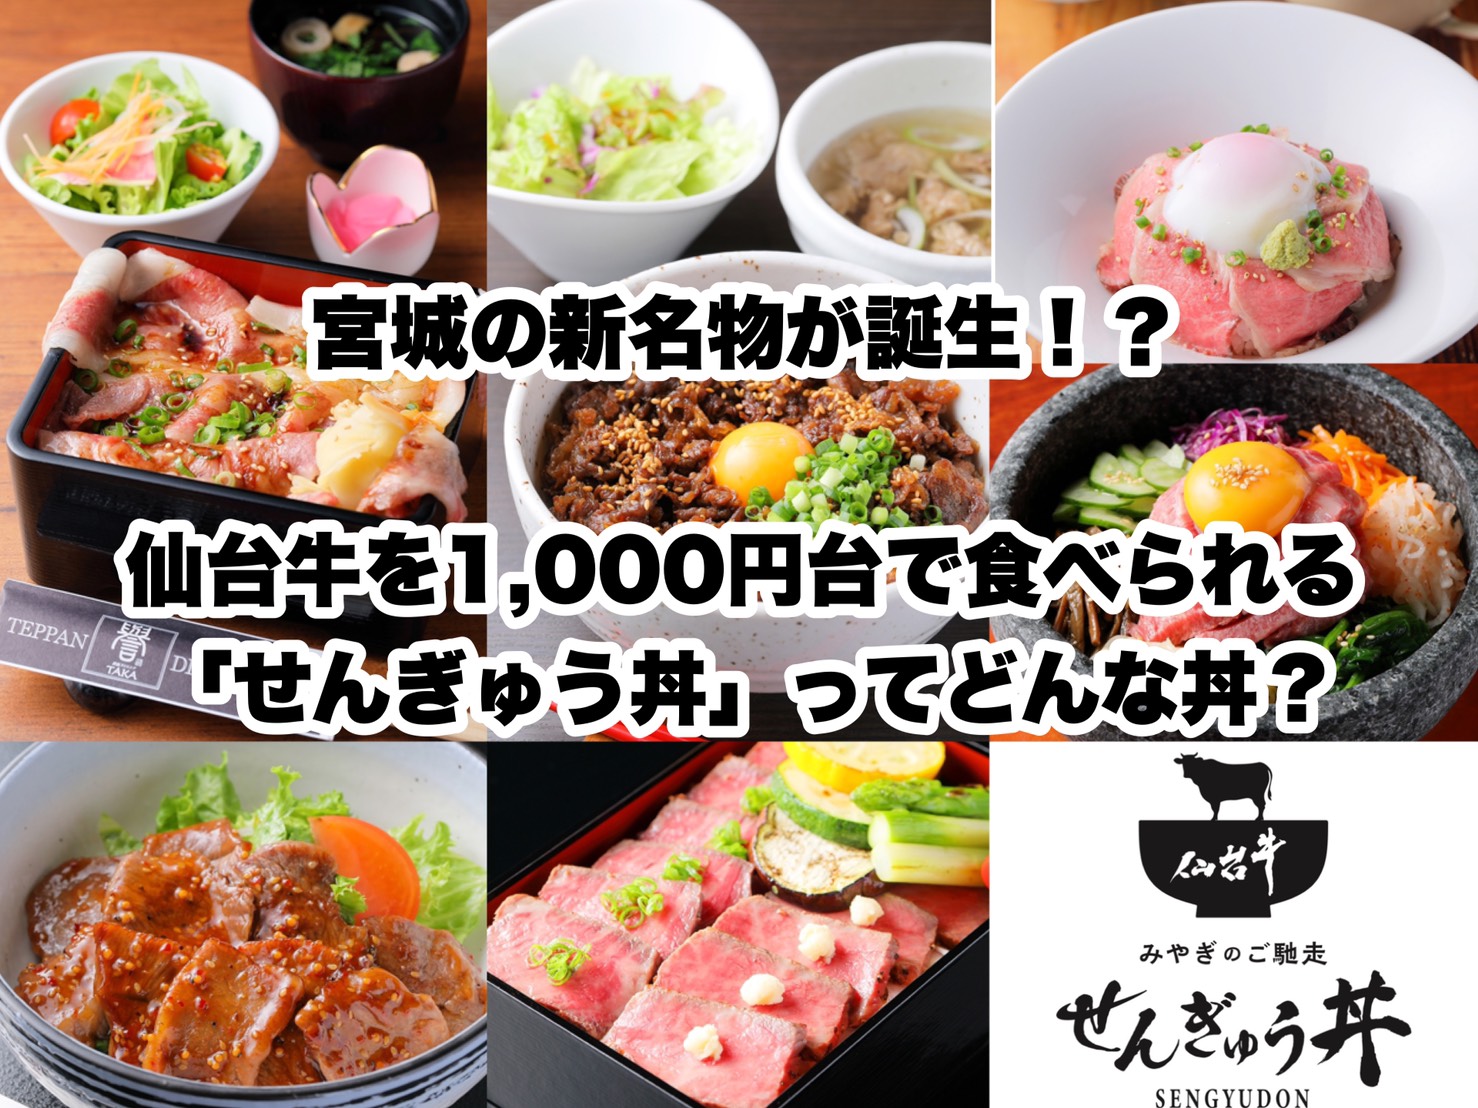 宮城の新名物が誕生 仙台牛を1 000円台で食べられる せんぎゅう丼 とは 日刊せんだいタウン情報s Style Web